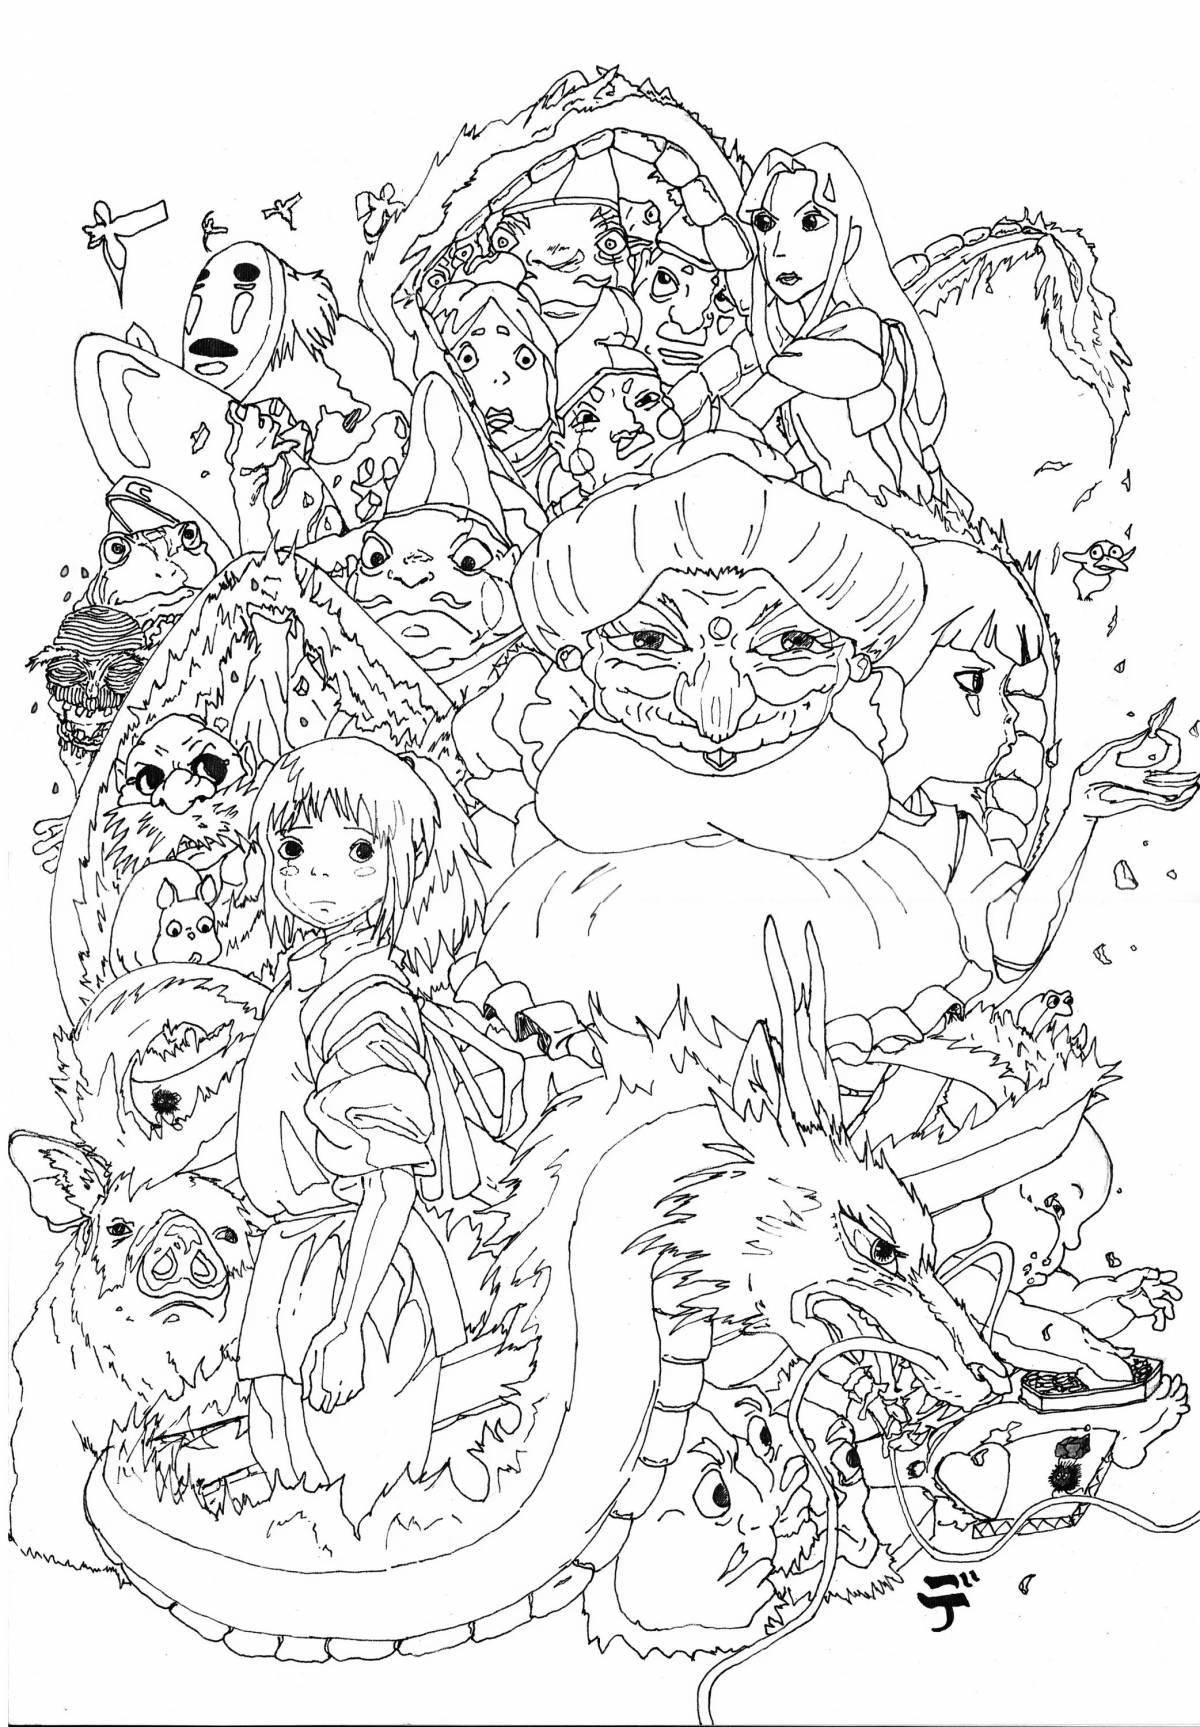 Hayao Miyazaki's whimsical coloring